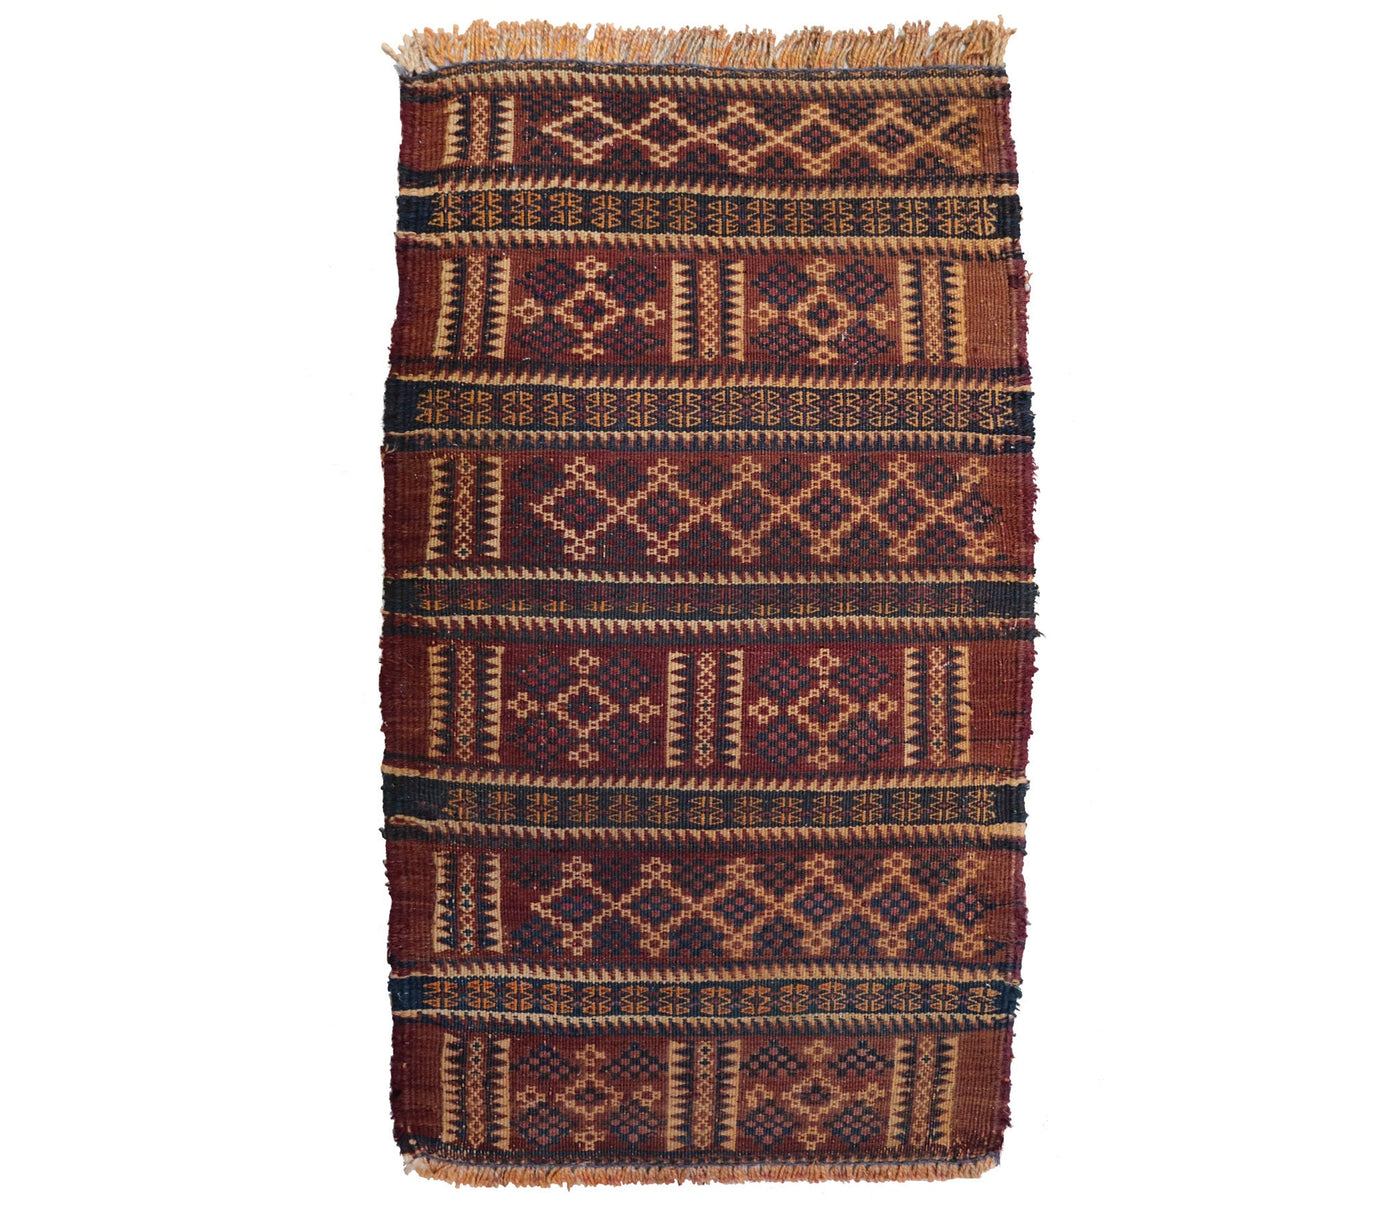 80x45 cm Antik orient handgewebte Teppich Nomaden Baluch sumakh kelim afghan Beloch kilim Nr-KL/1  Orientsbazar   